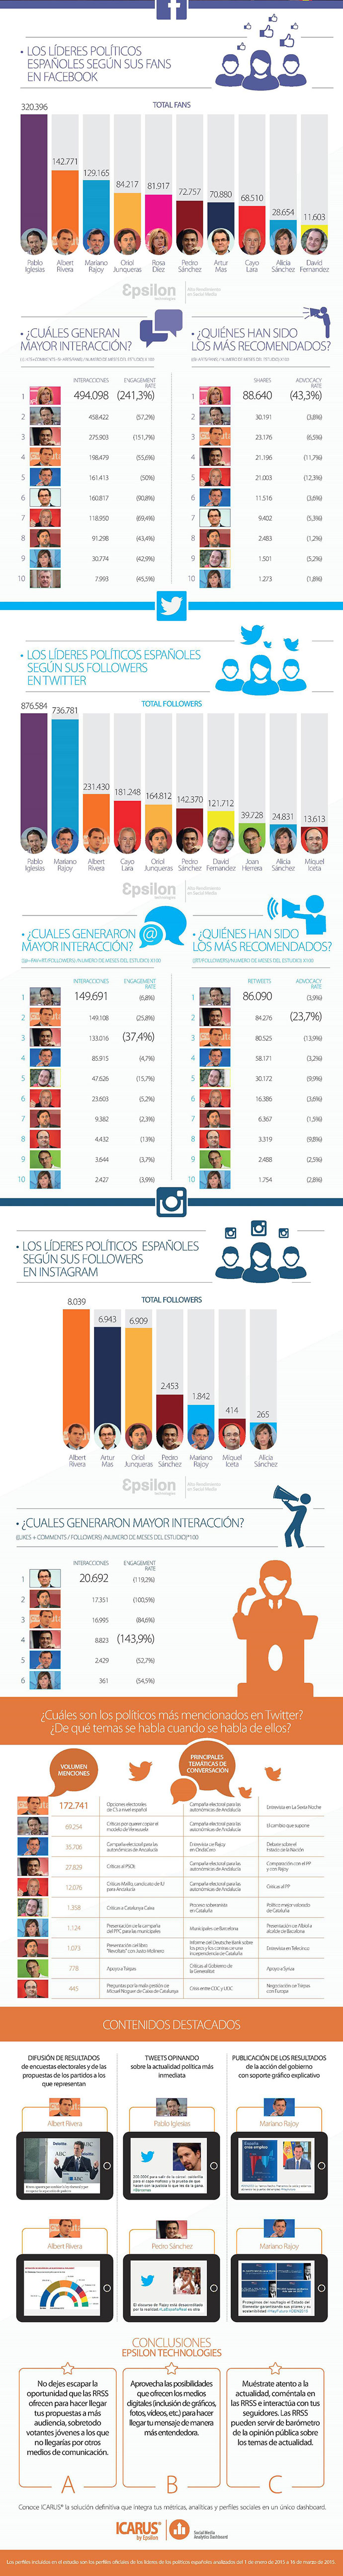 infografía de los políticos españoles en las redes sociales